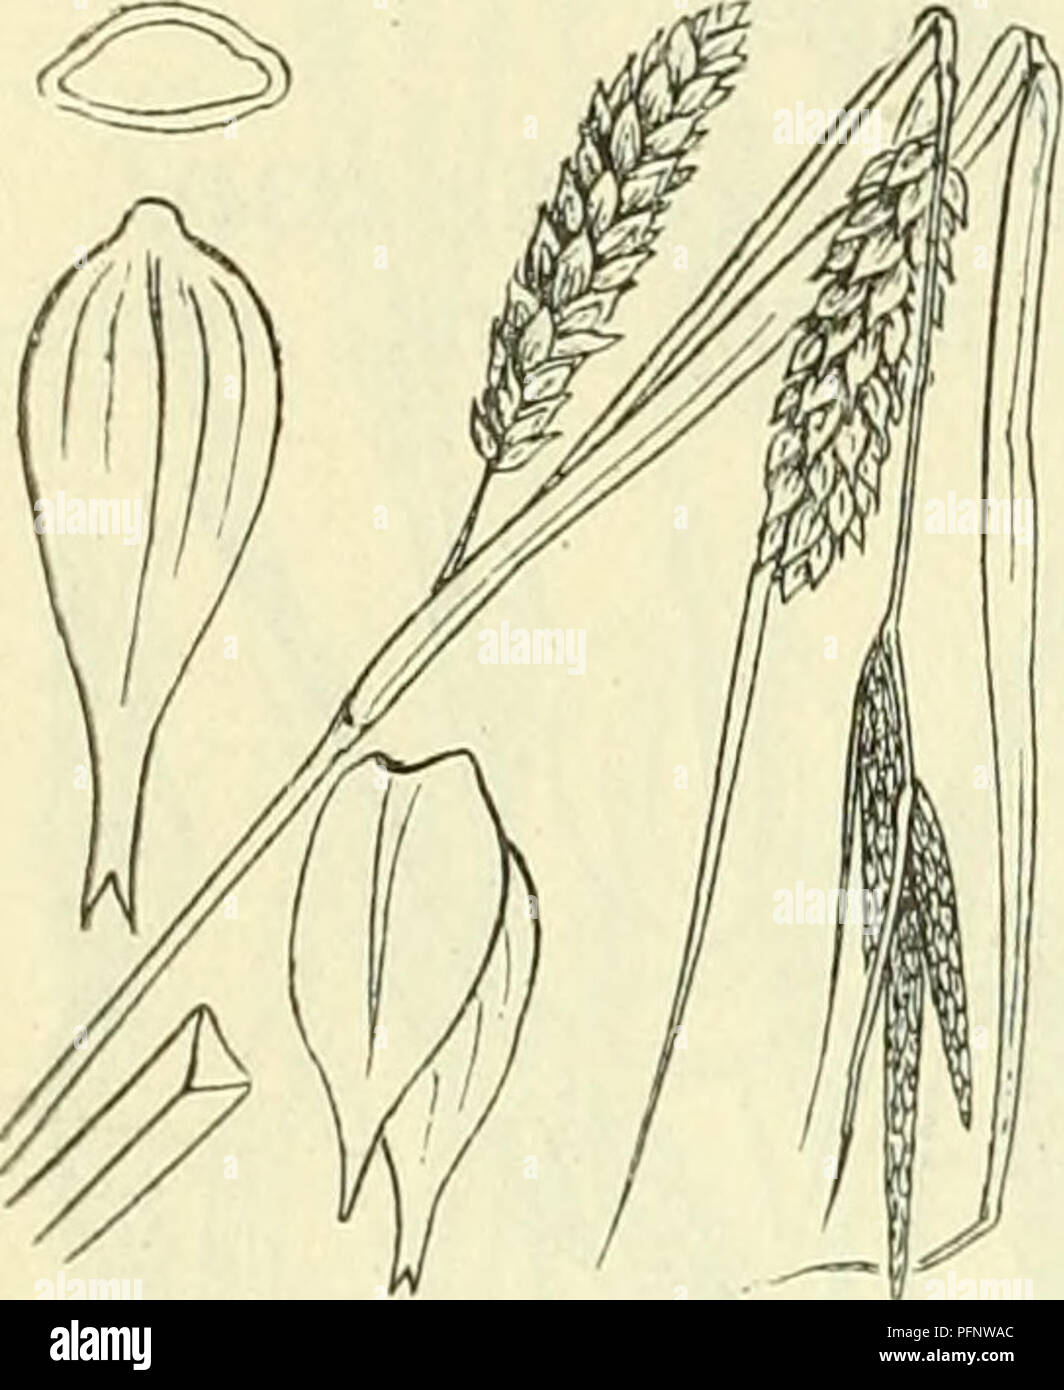 . De flora van Nederland. Plants. 408 â CYPERACEAE. FAMILIE 17.. Carex vesicaria Fig. 335. Volksnaam. In Noord Overijsel heet de plant krenipeldraad. C. vesicariai)L. Blaaszegge (fig. 335). Deze plant is grijsgroen met een kruipenden wortelstok. De stengel is meest stijf rechtopstaand, kaal, scherpkantig (fig. 335), naar boven ruw. De onderste bladen hebben een bruinachtige, meest purperkleurig aange- loopen, sterk rafelende scheede en de bladschijf is vrij breed (5-7 mM meest), vlak, meest iets ruw en kaal. De bloeiwijze bestaat meest uit 2-3 vrij ver uiteenstaande vrouwelijke en meest 2-3 vr Stock Photo